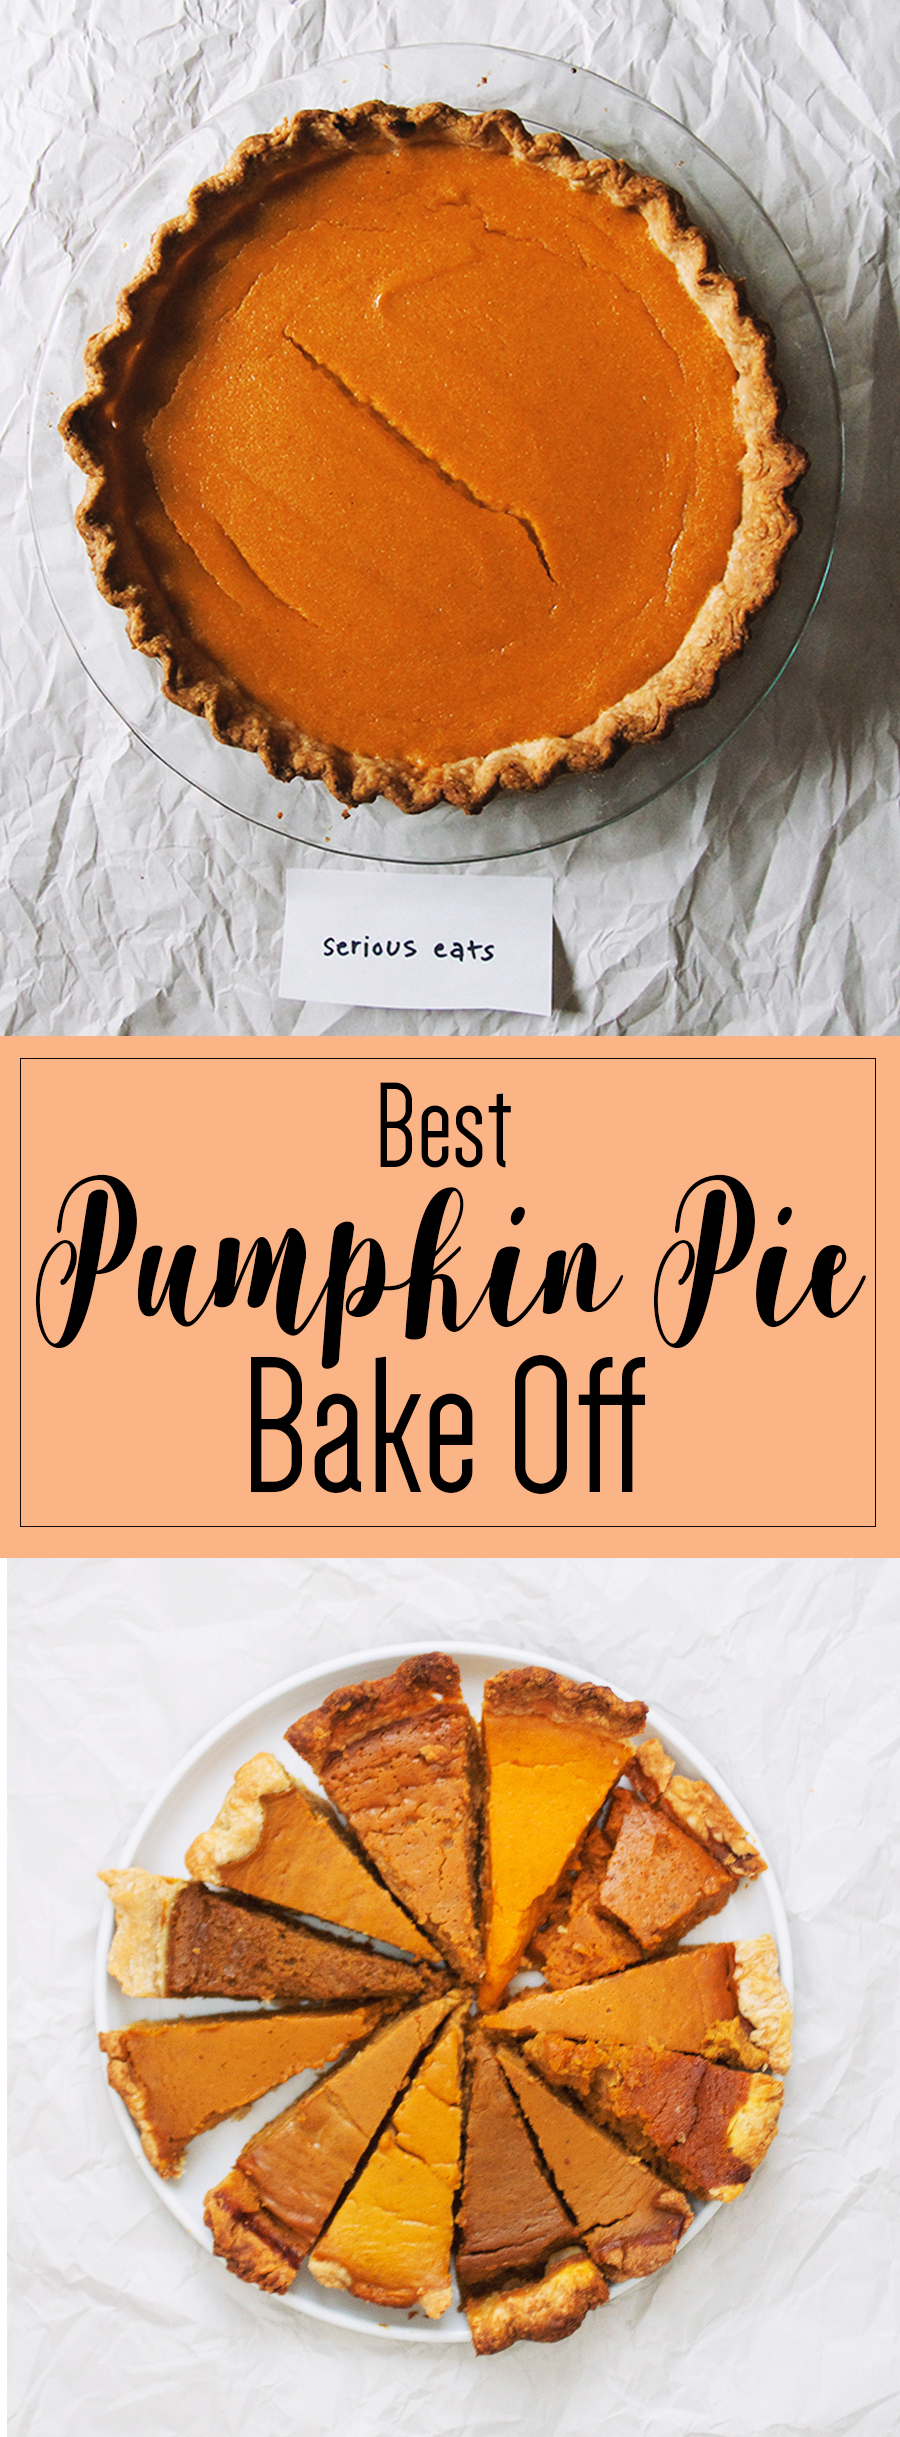 Best Pumpkin Pie Bake Off Pinterest Pin // The Pancake Princess